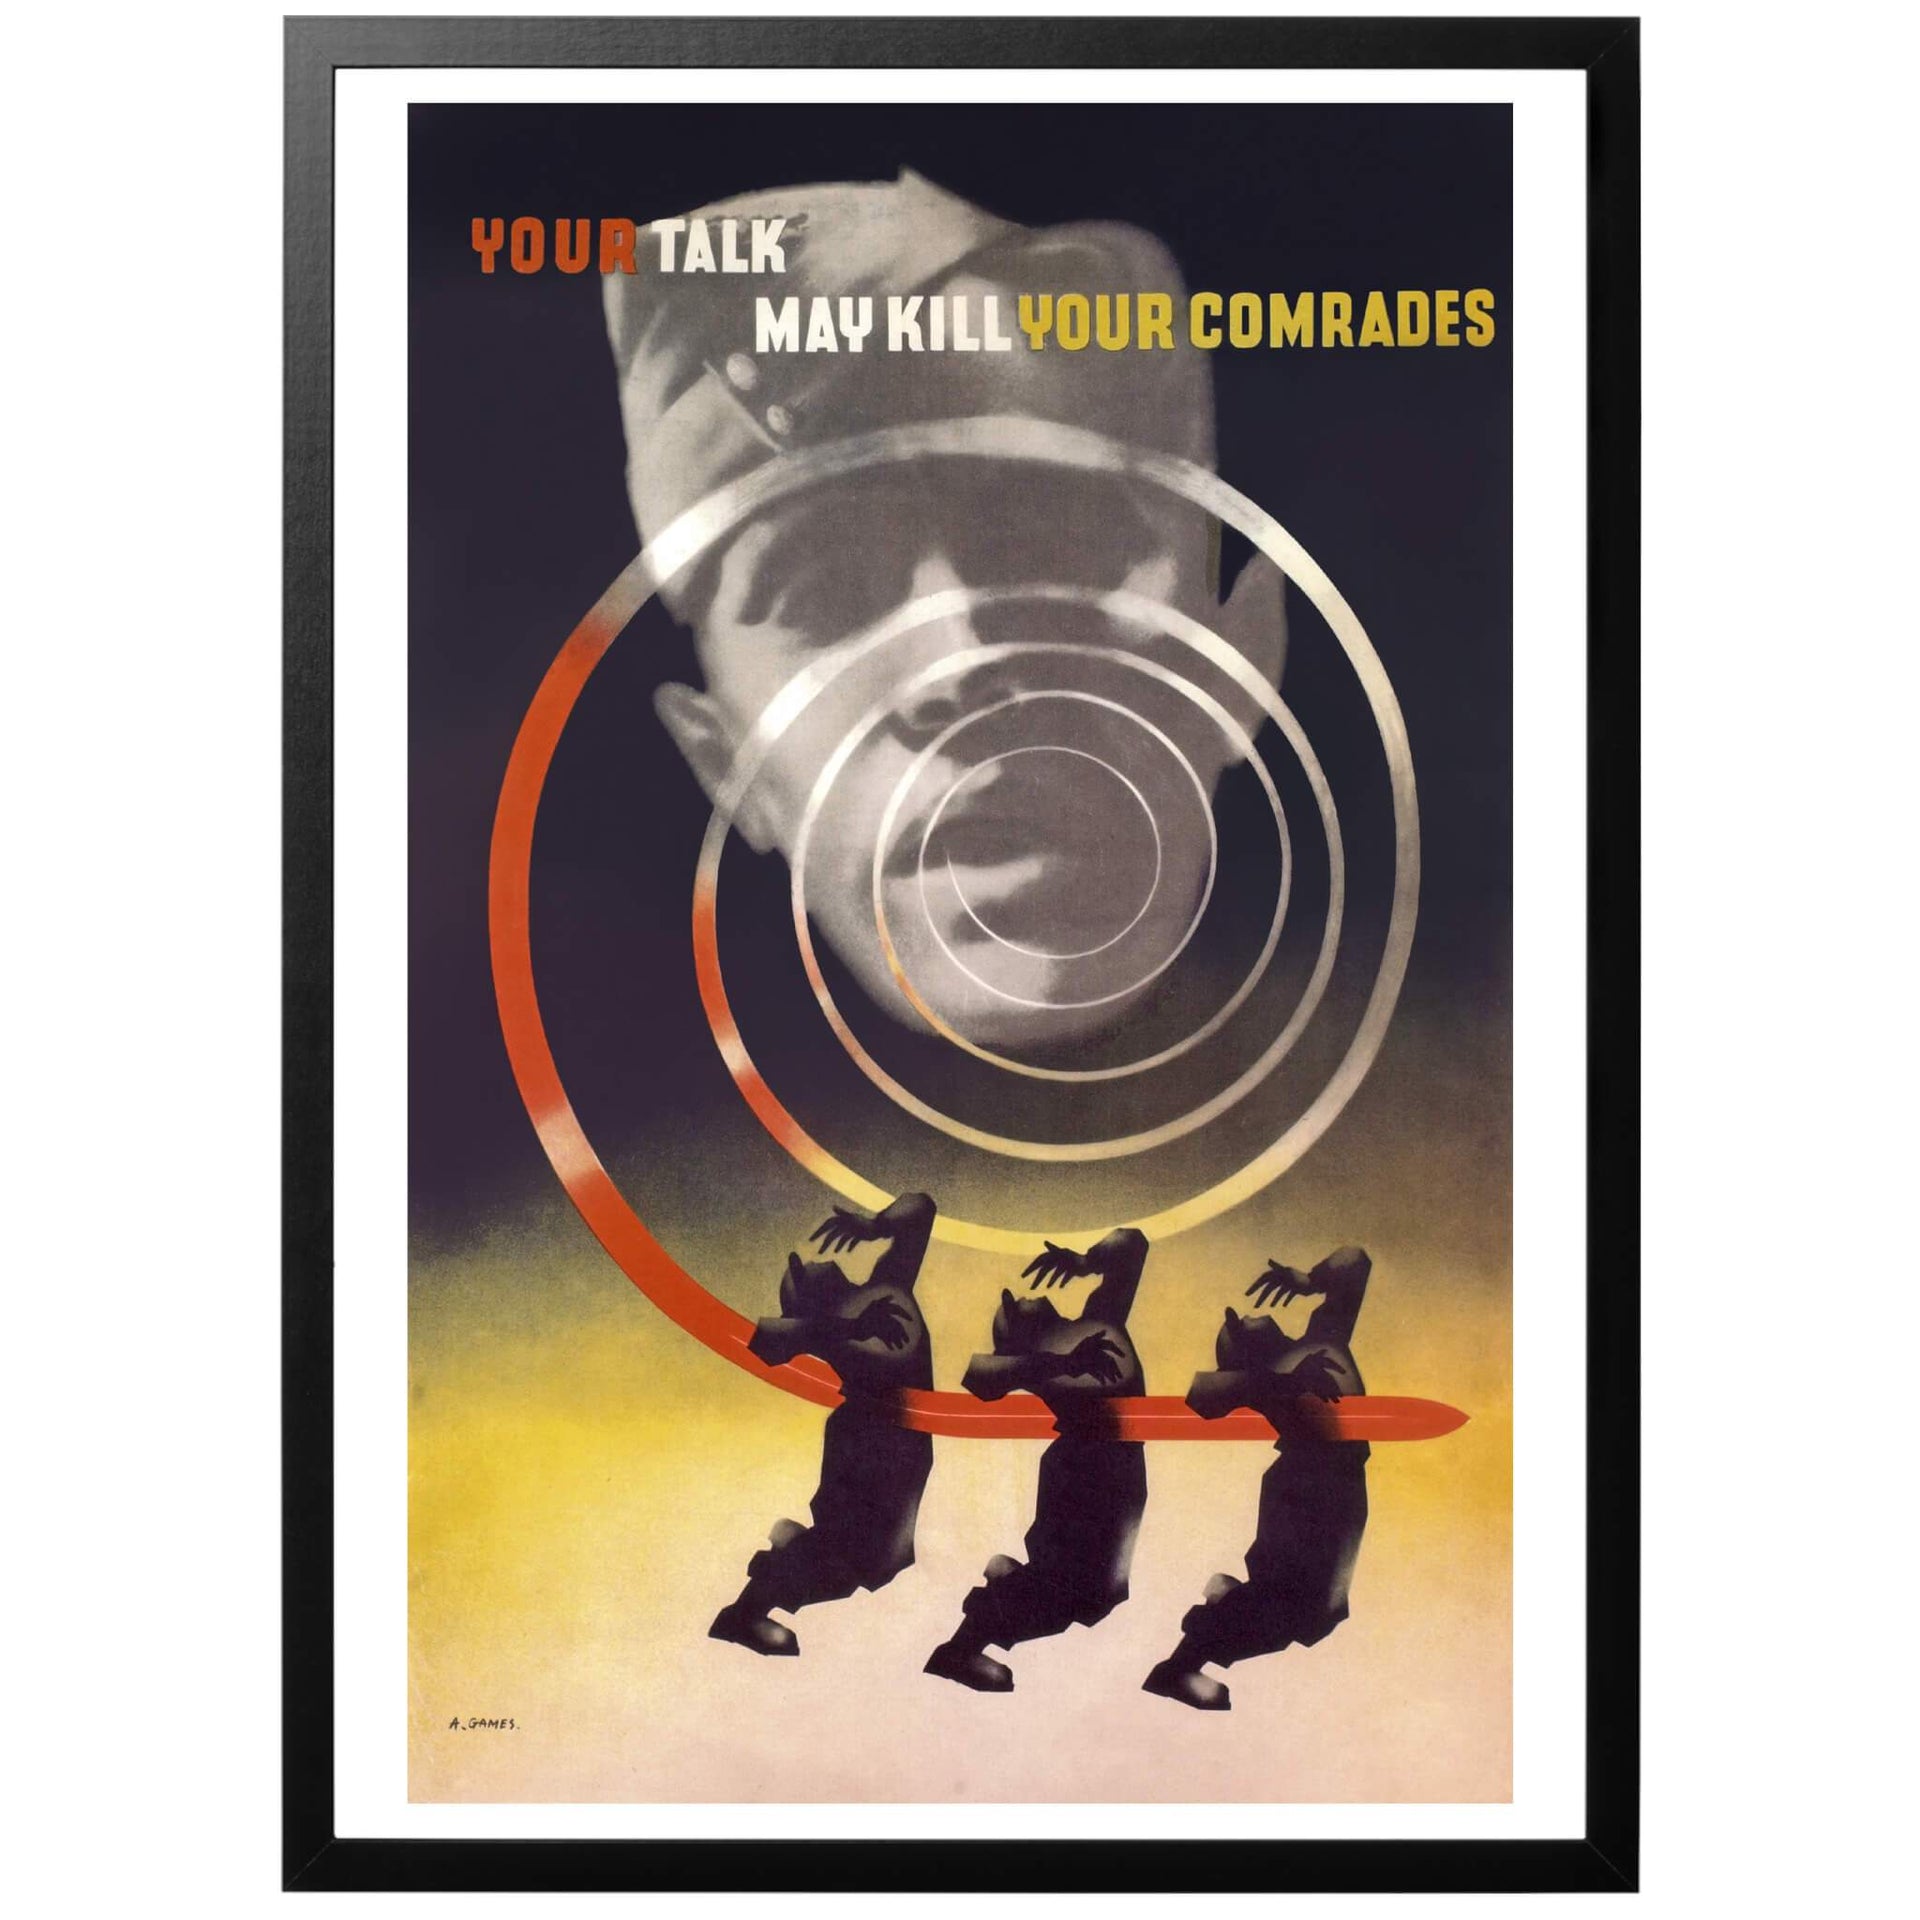 Your talk may kill your comrades/Ditt prat kan döda dina kamrater. Brittisk propagandaposter från 1942 som på ett ganska brutalt sätt visar faran med vårdslöst tal. Affischen är gjord av den kände grafiske designern Abram Games, som gjorde en rad mycket kända och uppskattade posters. 